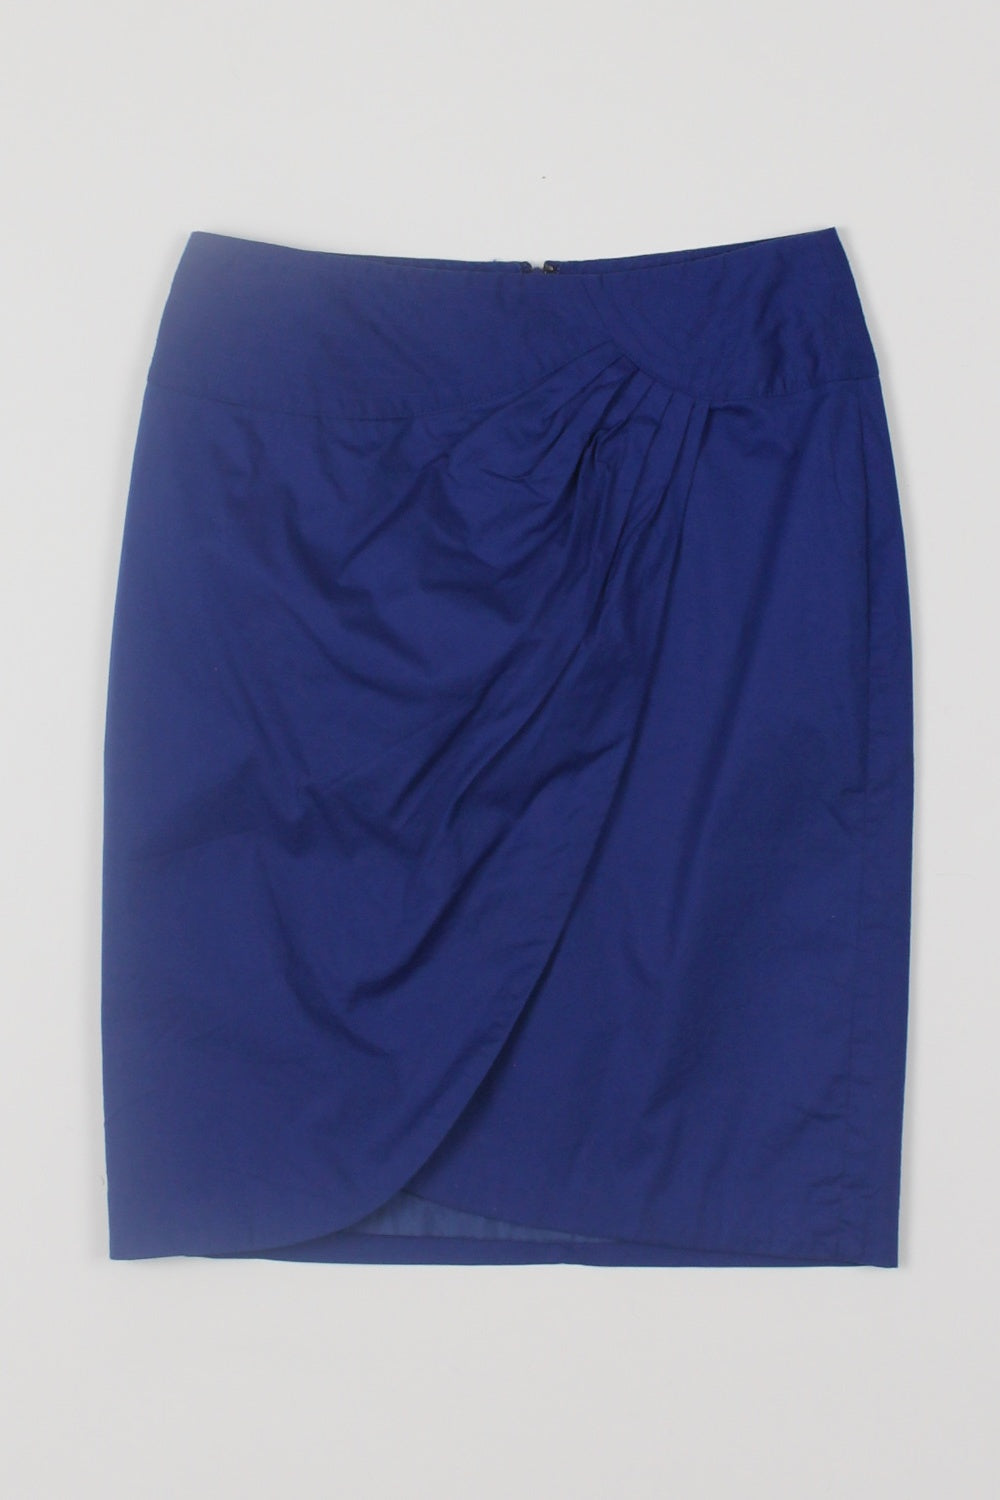 Sportsgirl Blue Wrap Front Skirt 8